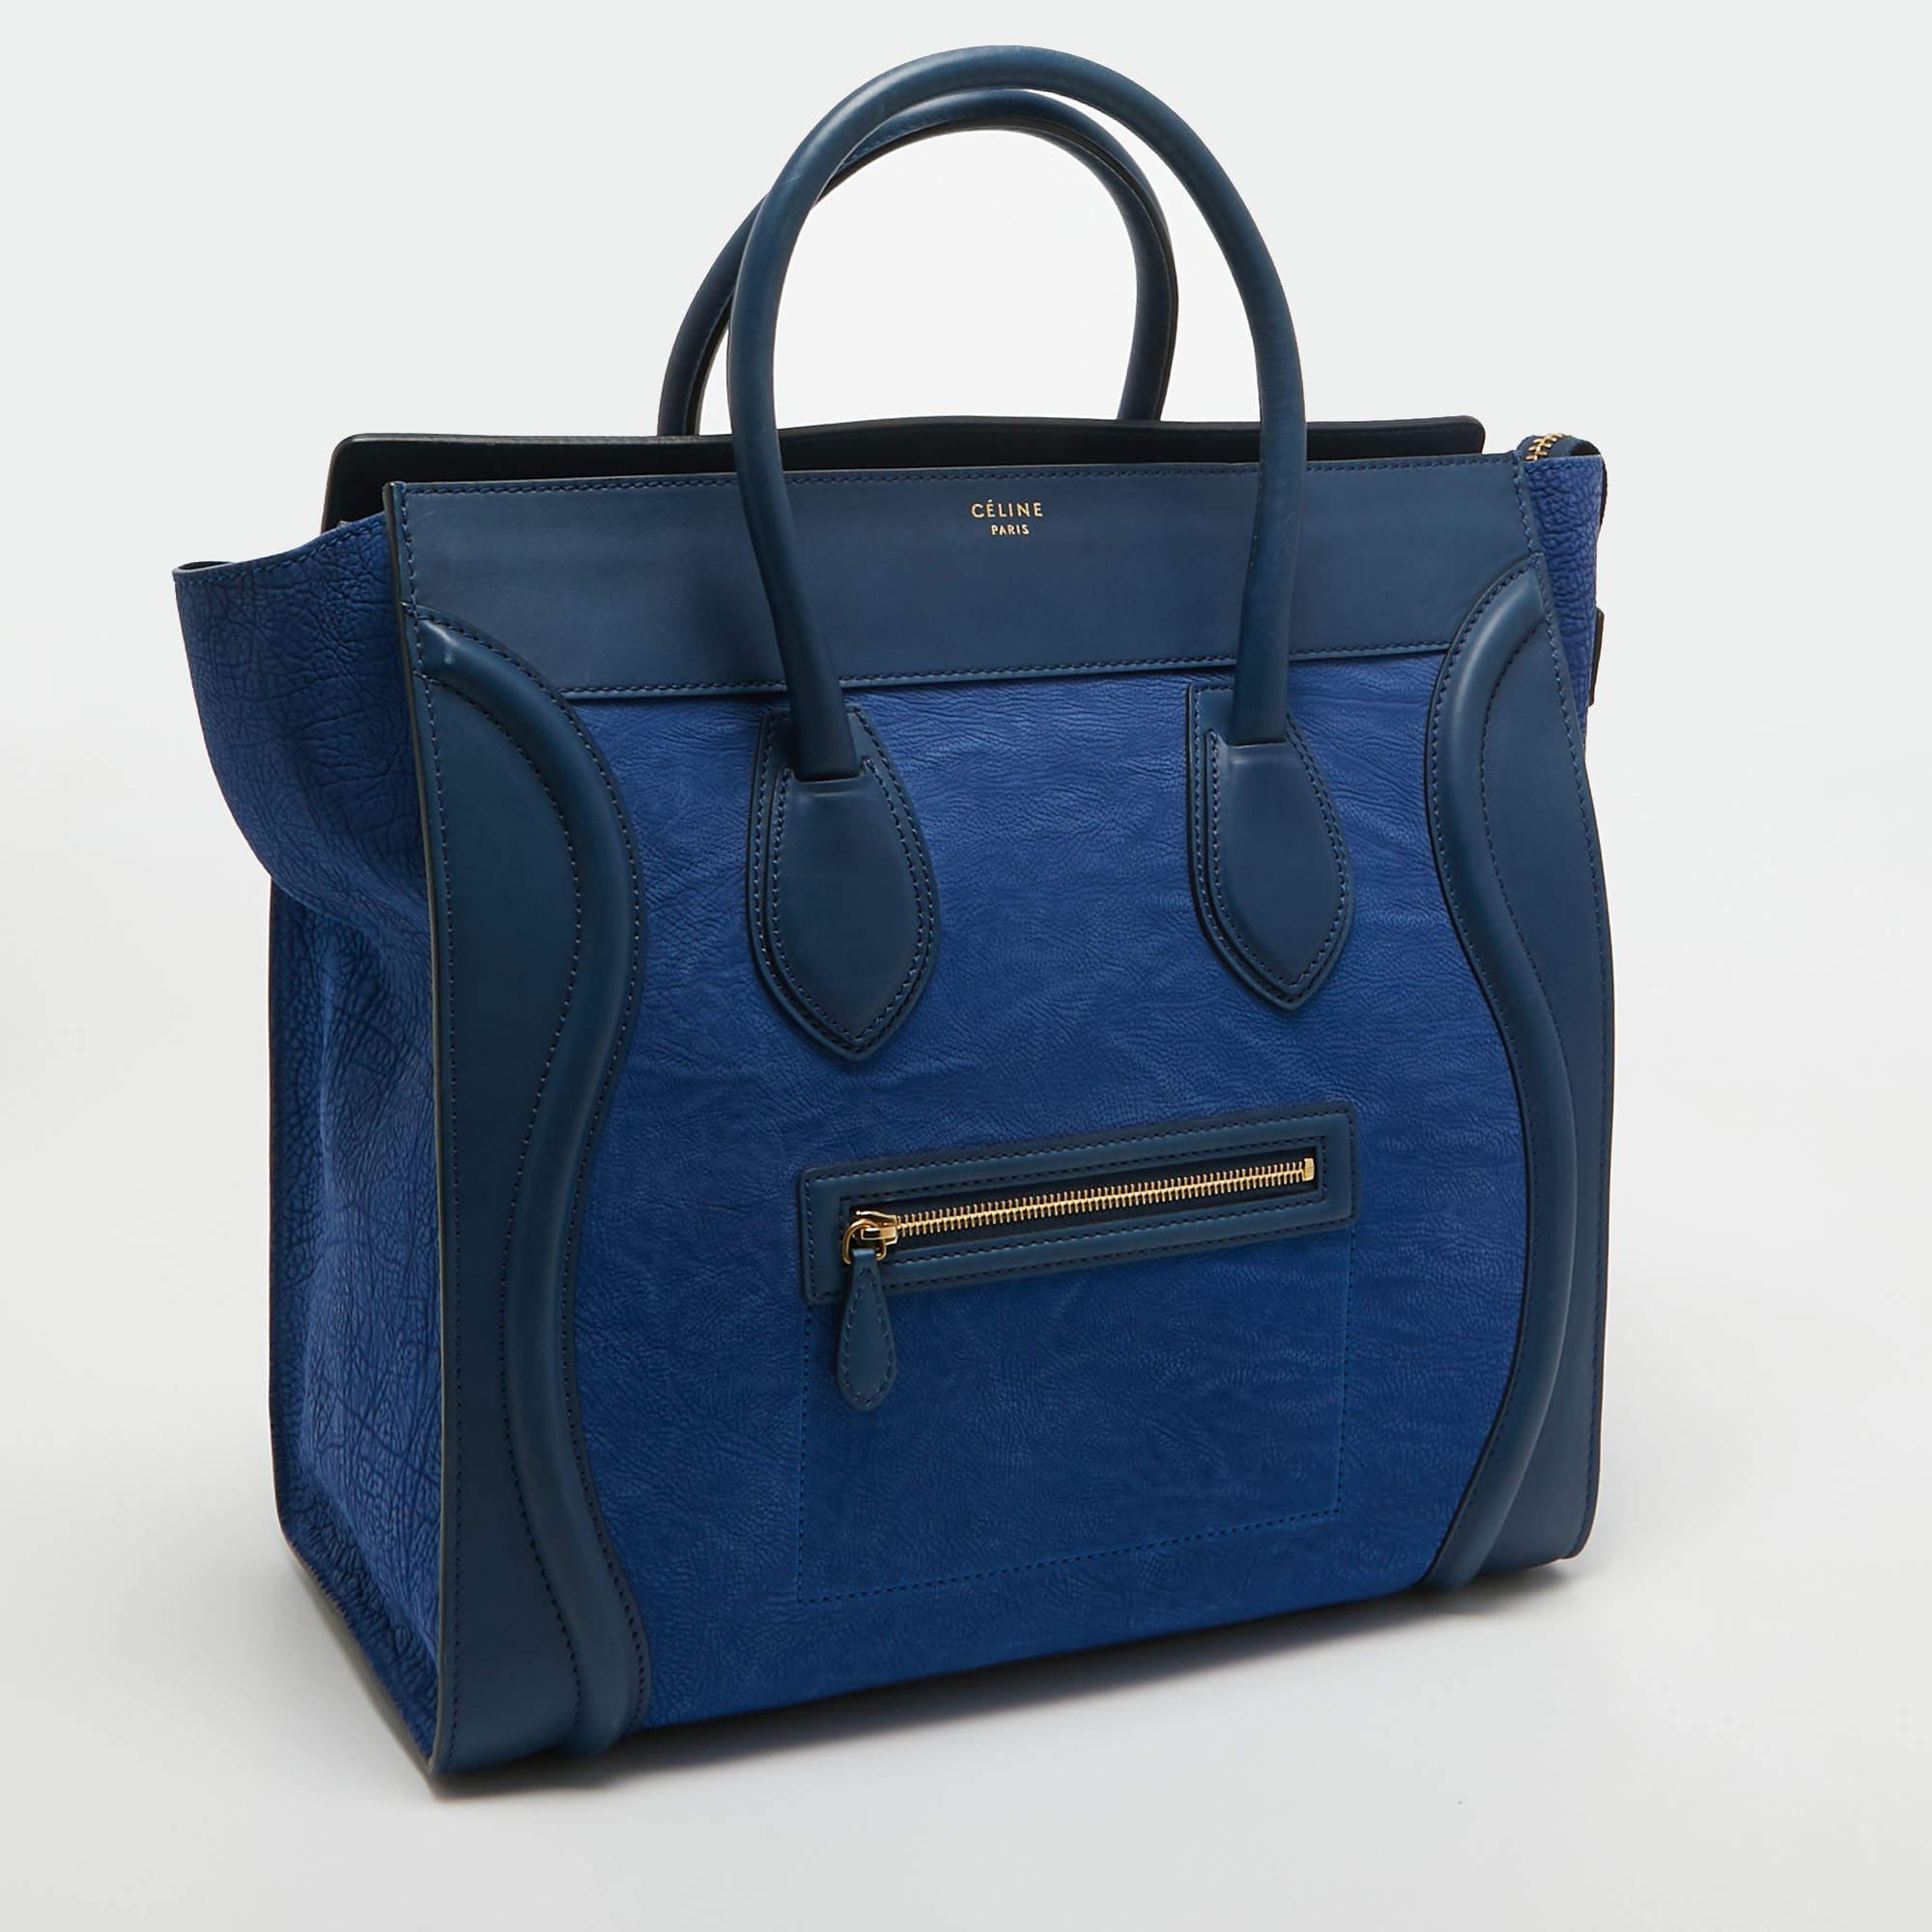 L'utilisation de cuir bleu bicolore sur l'extérieur confère à ce fourre-tout Celine un grand attrait. Accessoire attrayant, le sac comporte une poche zippée sur le devant, deux anses sur le dessus et des ferrures dorées. L'intérieur doublé de cuir